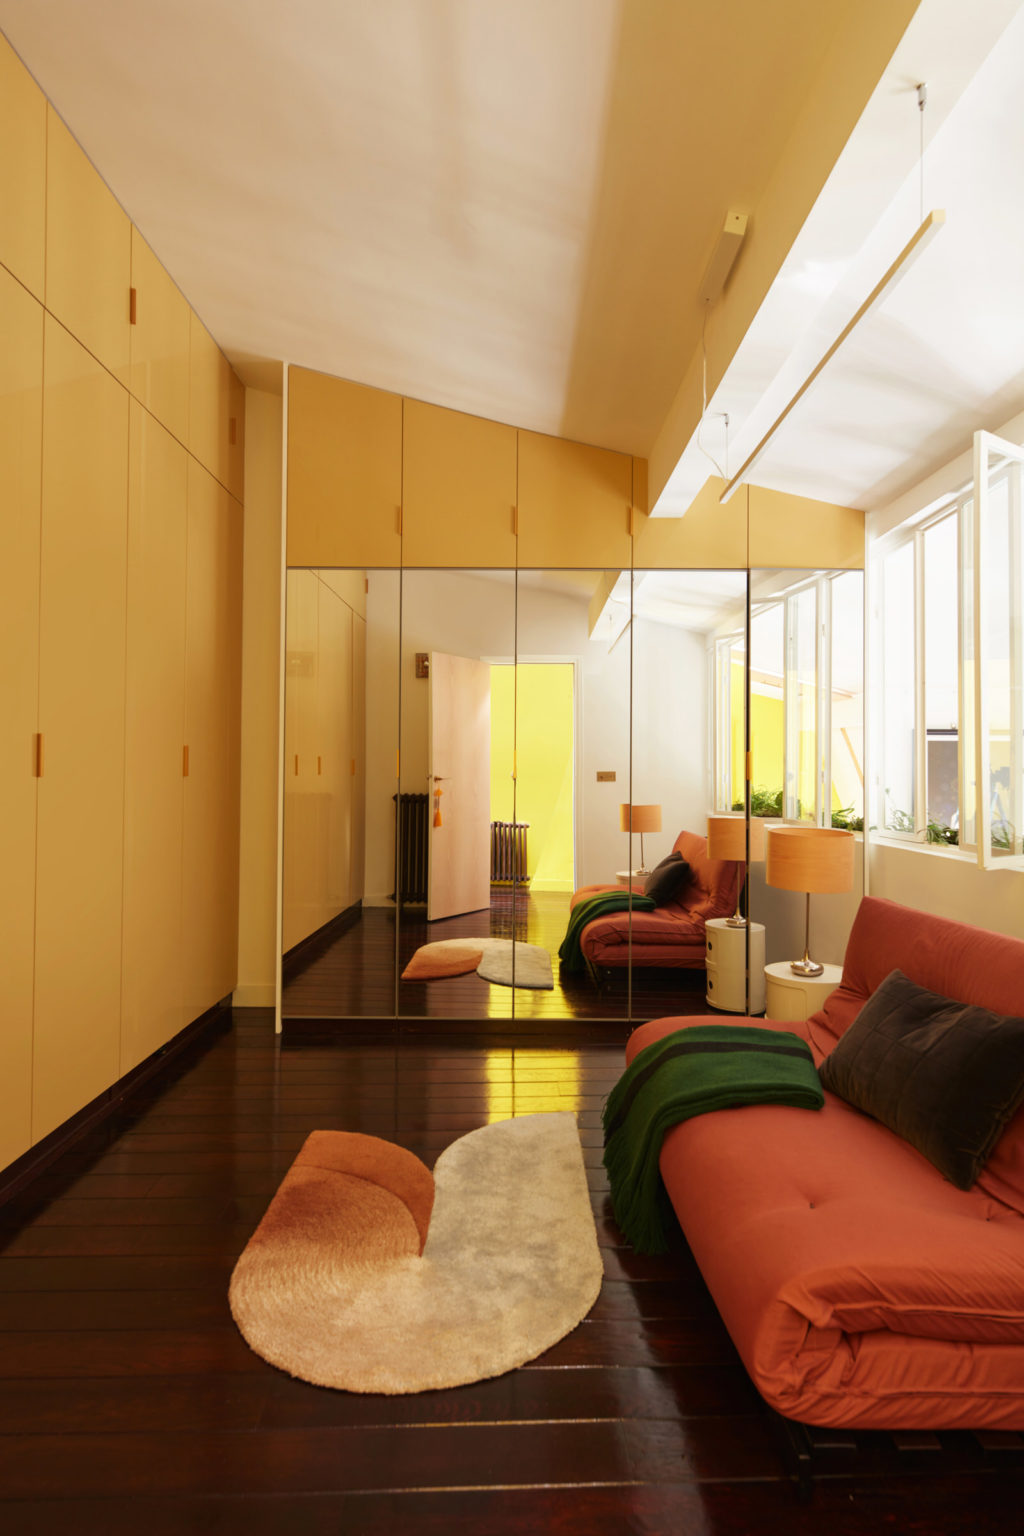 Tầng 2 bố trí một phòng khách phụ với ghế ngồi màu cam gạch ấm cúng và loại bỏ bàn nước để tạo lối đi rộng rãi. Đây cũng được dùng như phòng thư giãn, phòng ngủ cho khách vì chiếc ghế có thể mở rộng thành chiếc nệm êm ái.